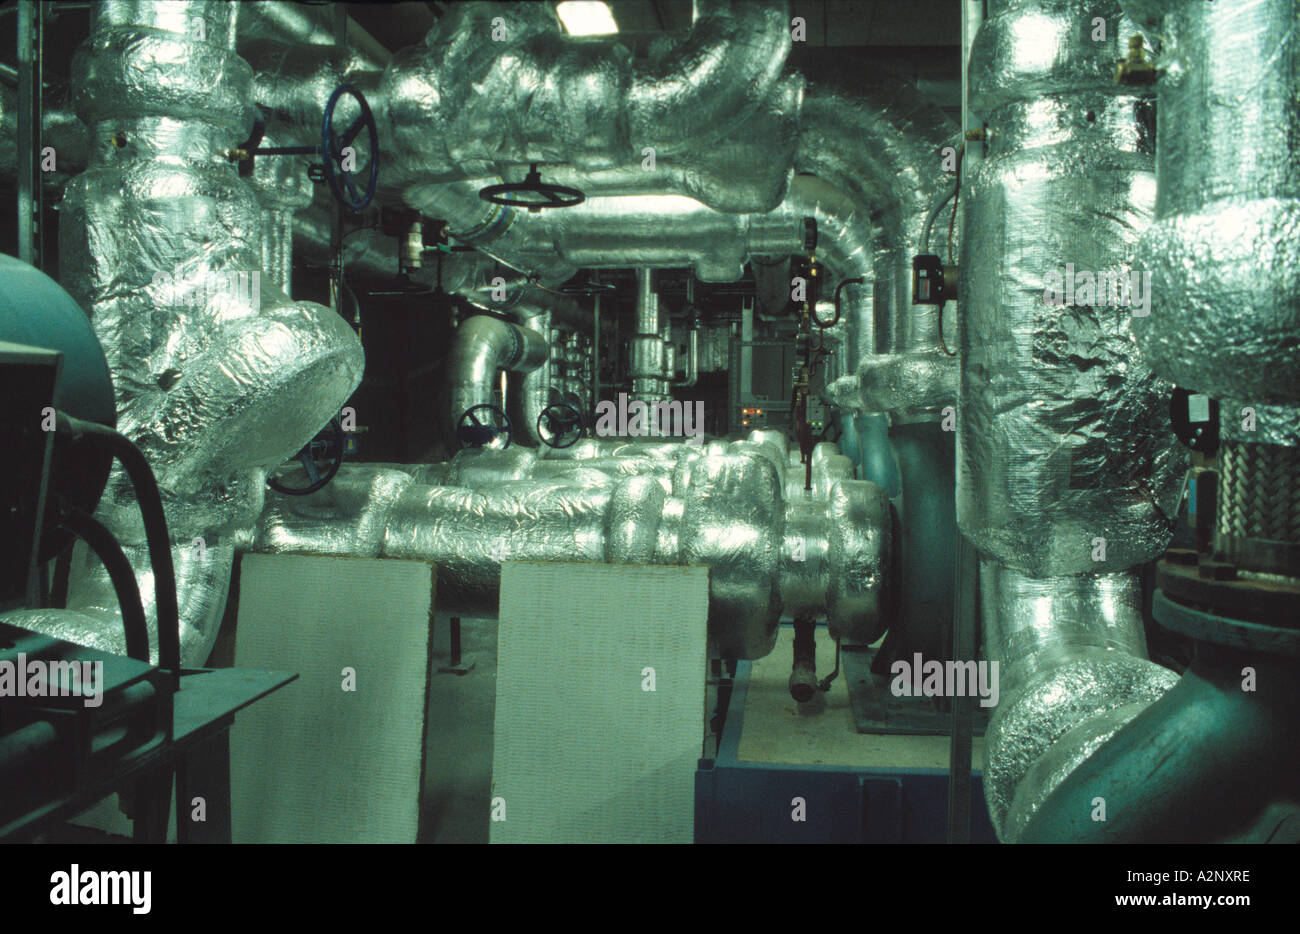 Isolierung von Rohrleitungen und Klimaanlage Stockfotografie - Alamy